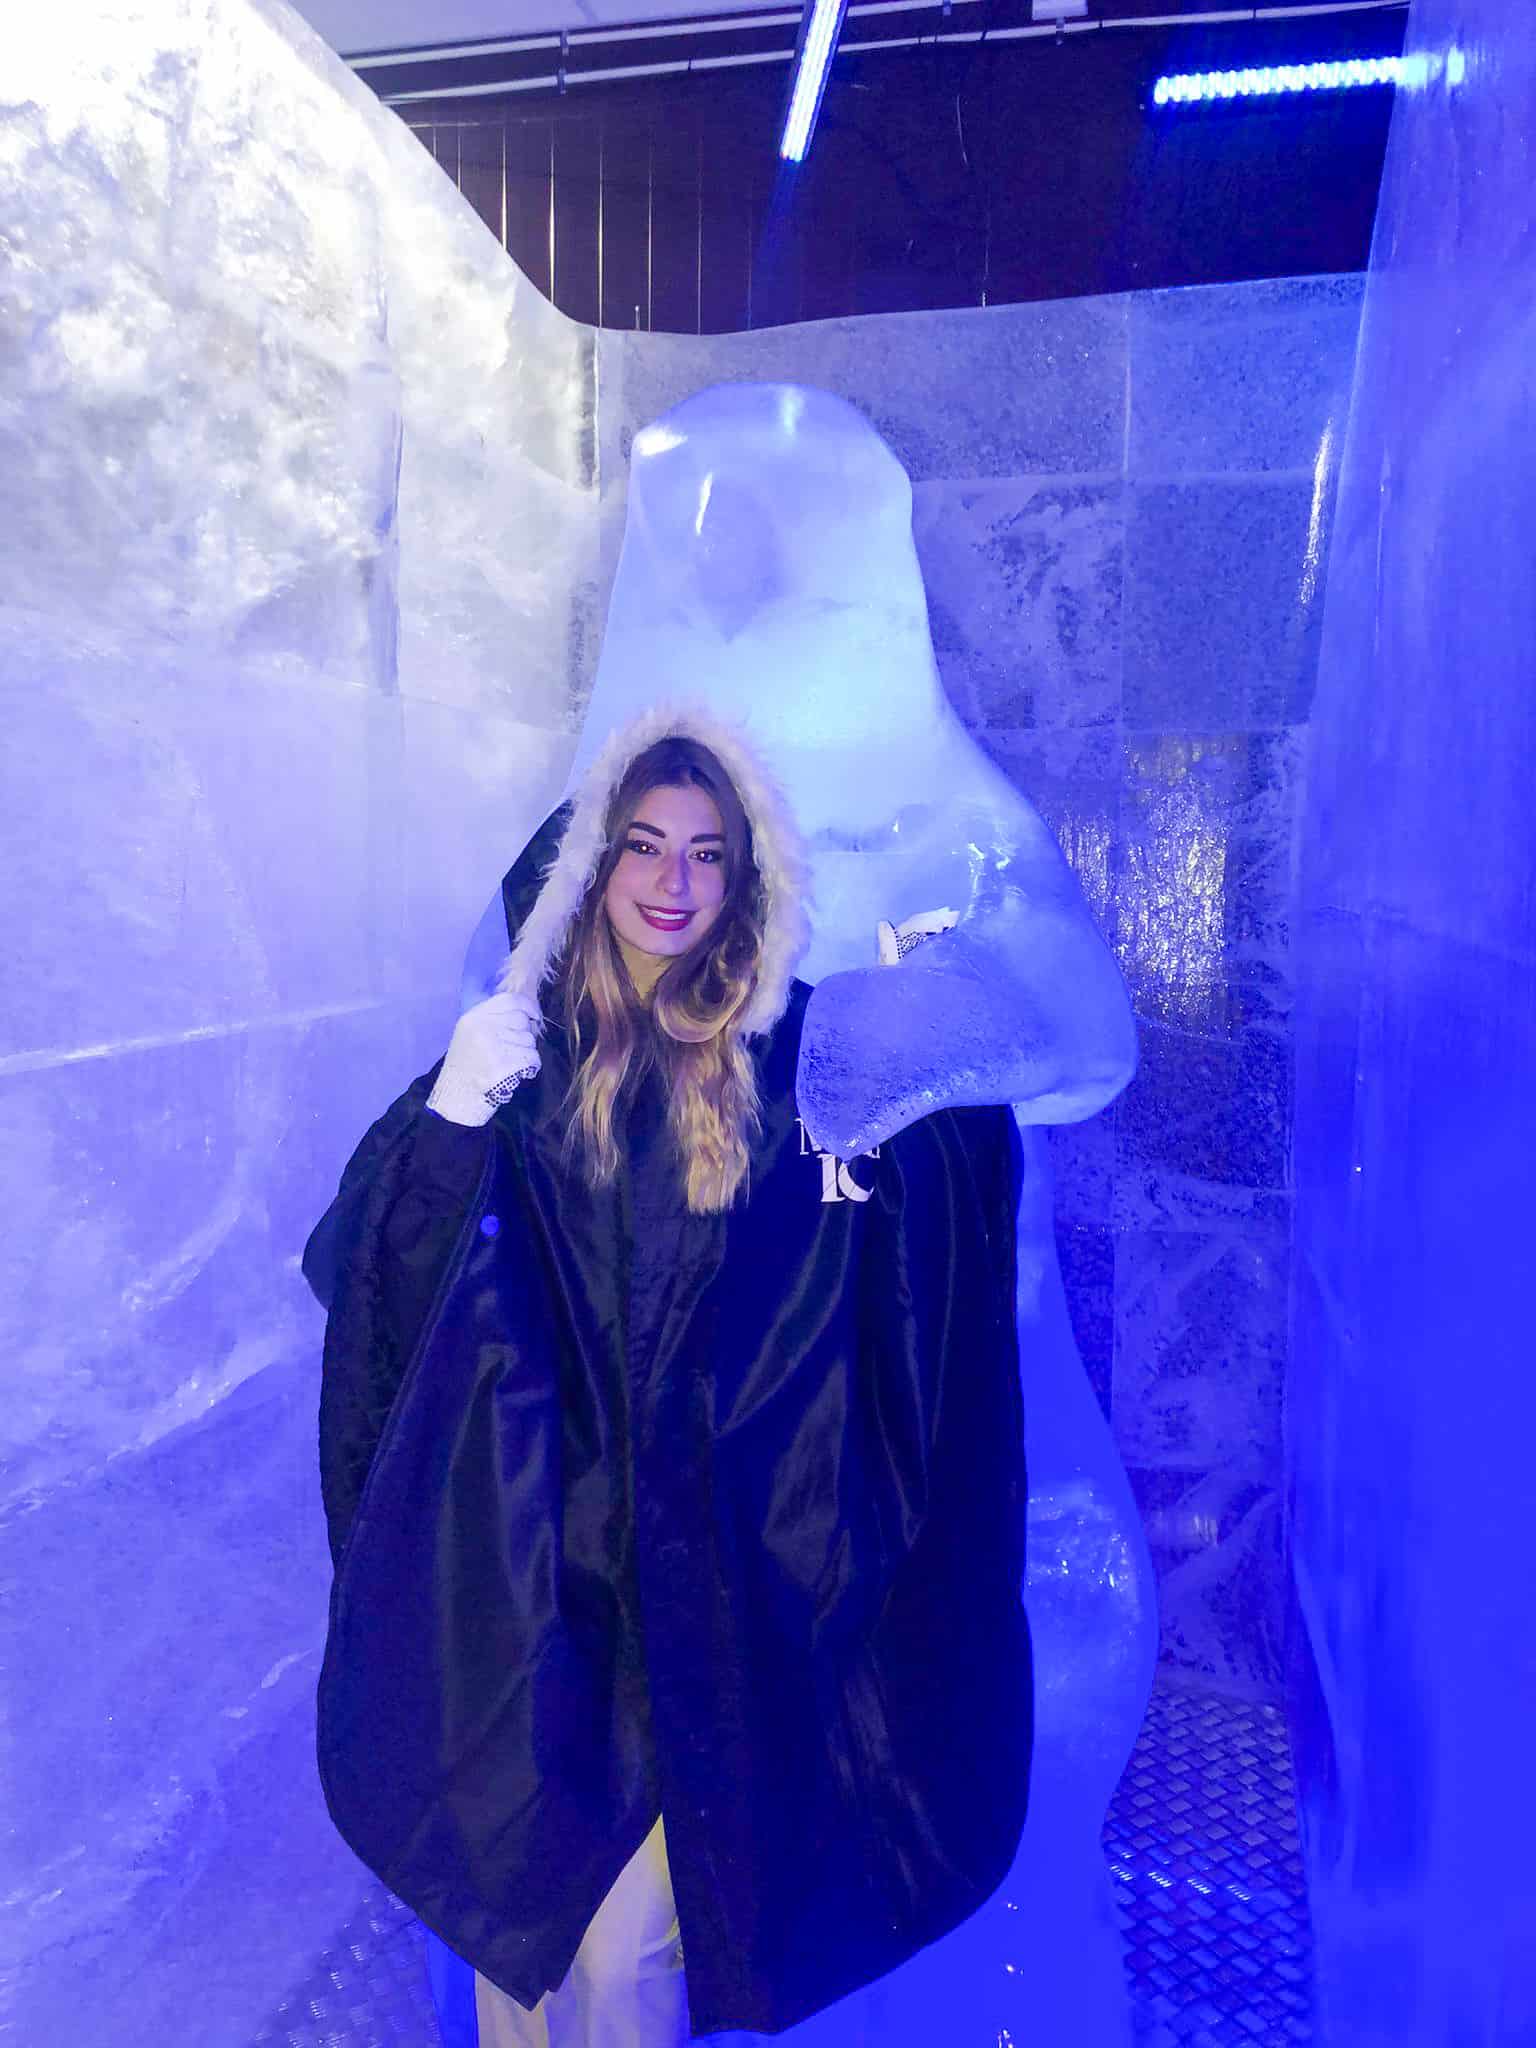 Barra de hielo mágico | ¡Visita Tromsø en invierno!